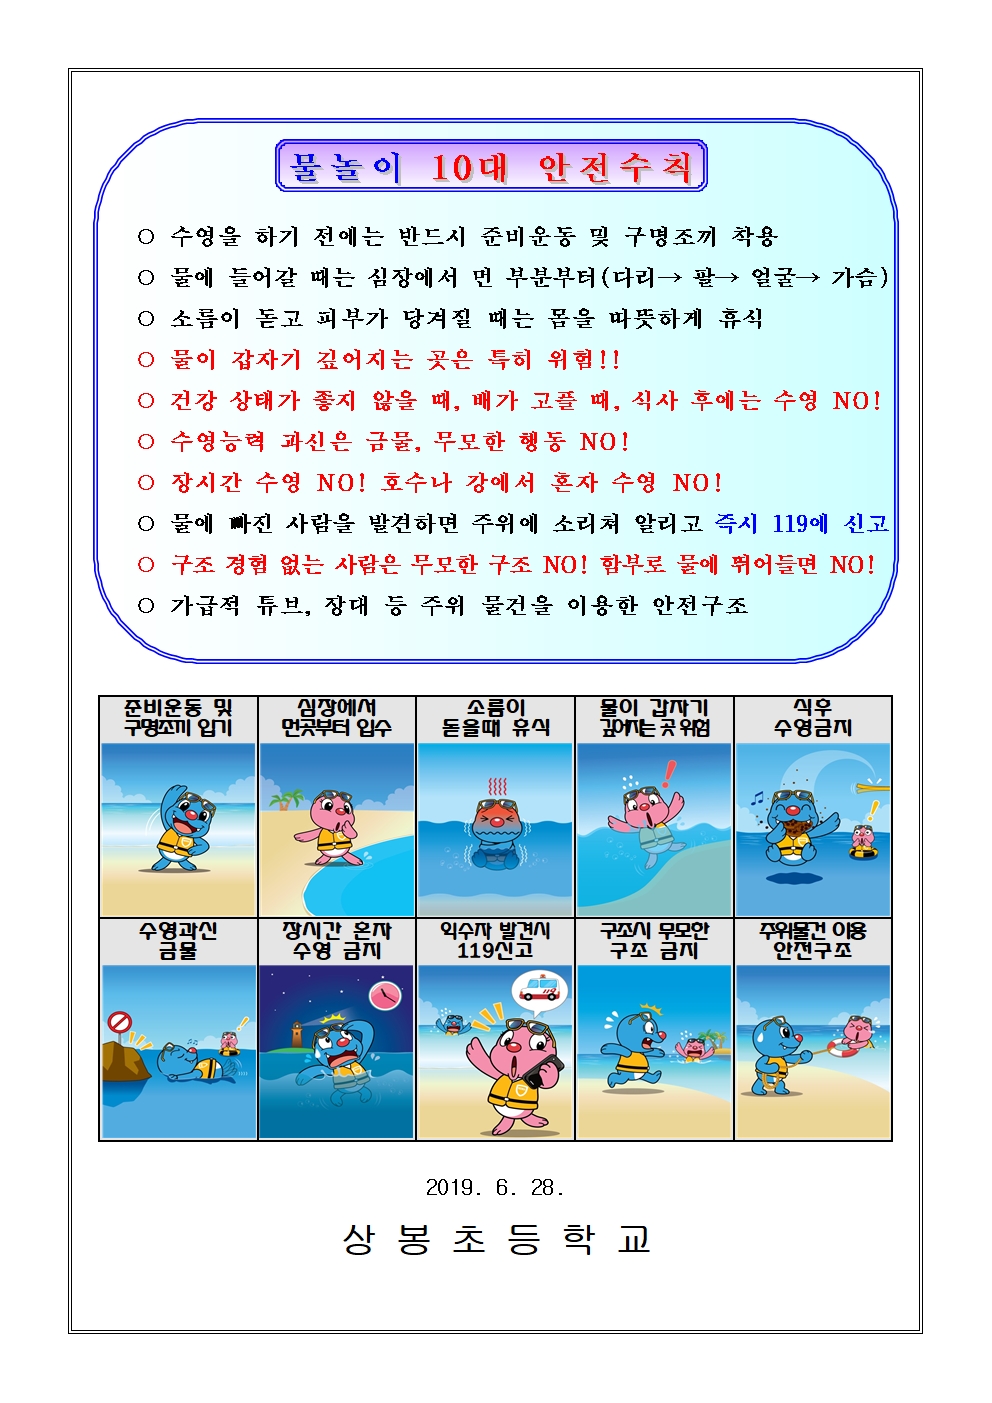 2019. 물놀이 안전사고 예방_가정통신문002